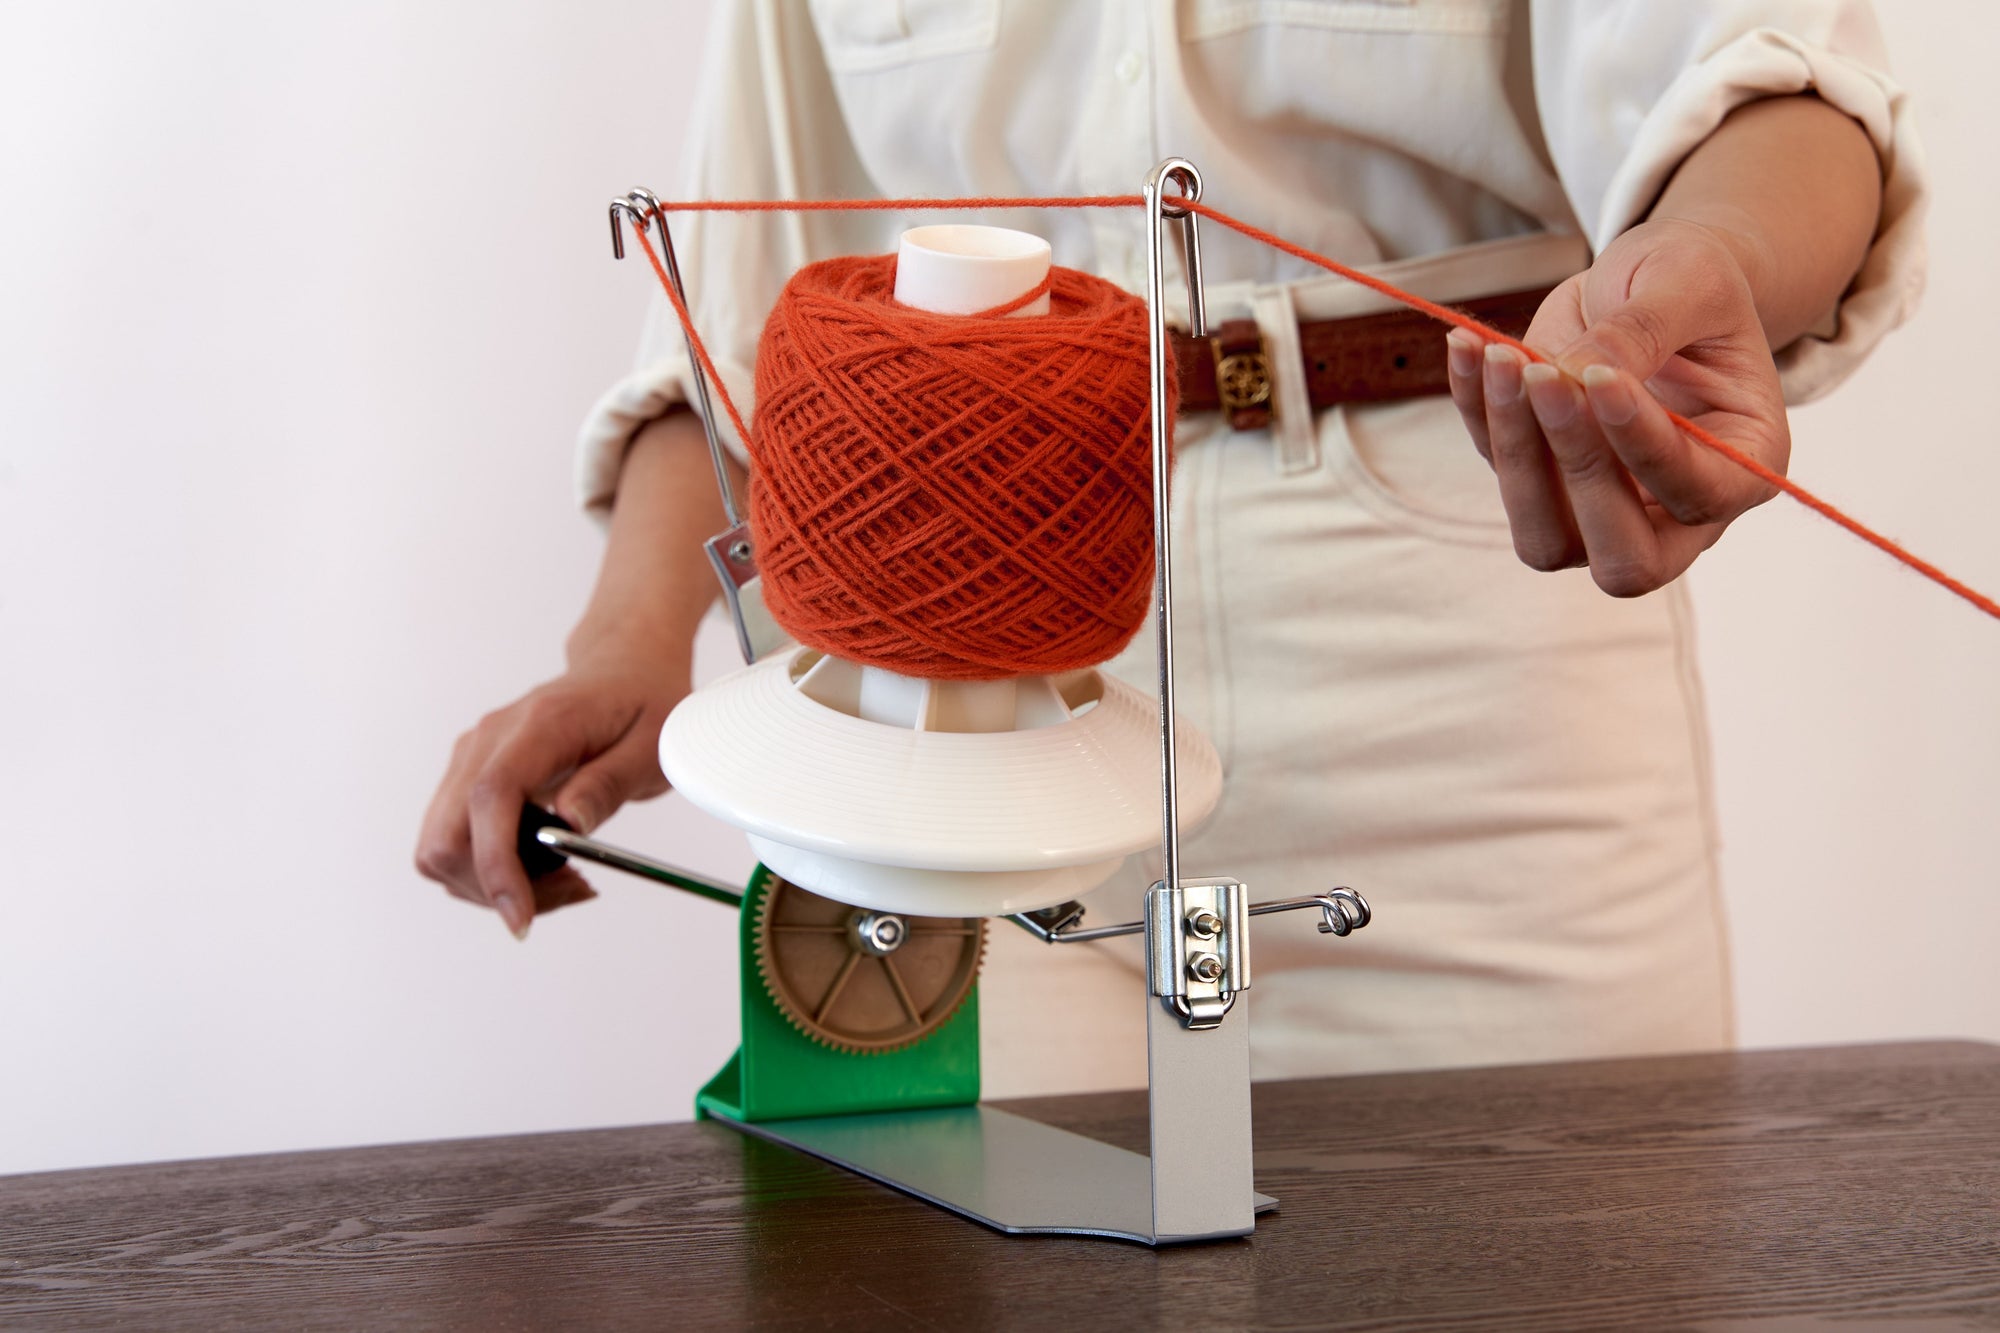 Yarn Winder: Effortless Yarn Ball Creation for Crafting